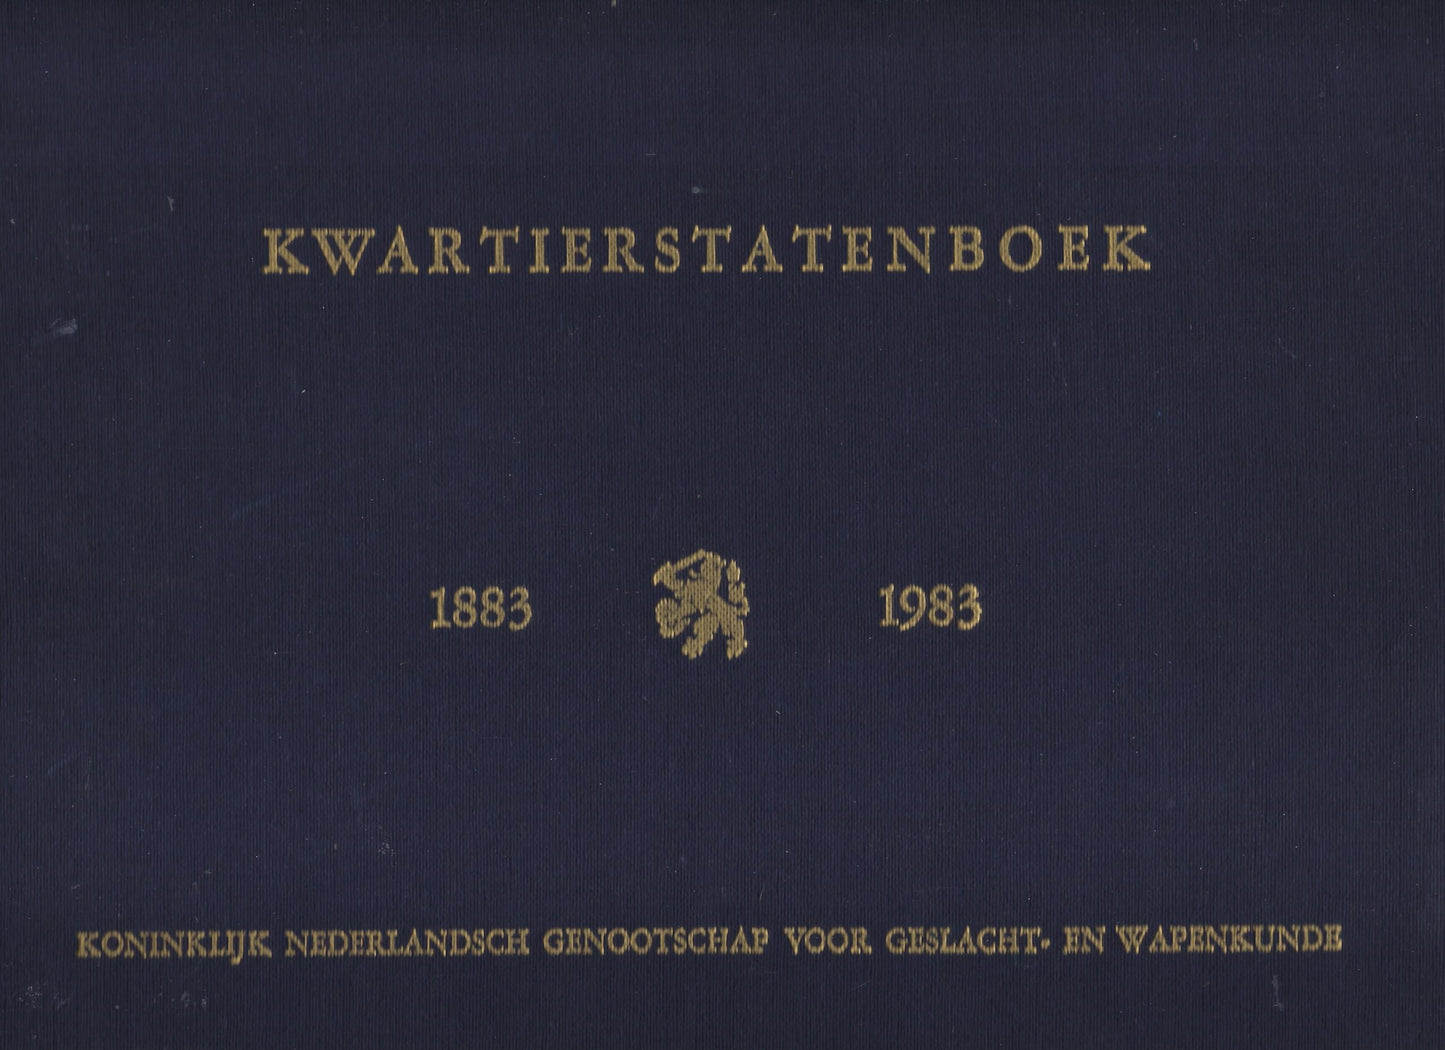 Kwartierstatenboek 1883 - 1983 (studio)